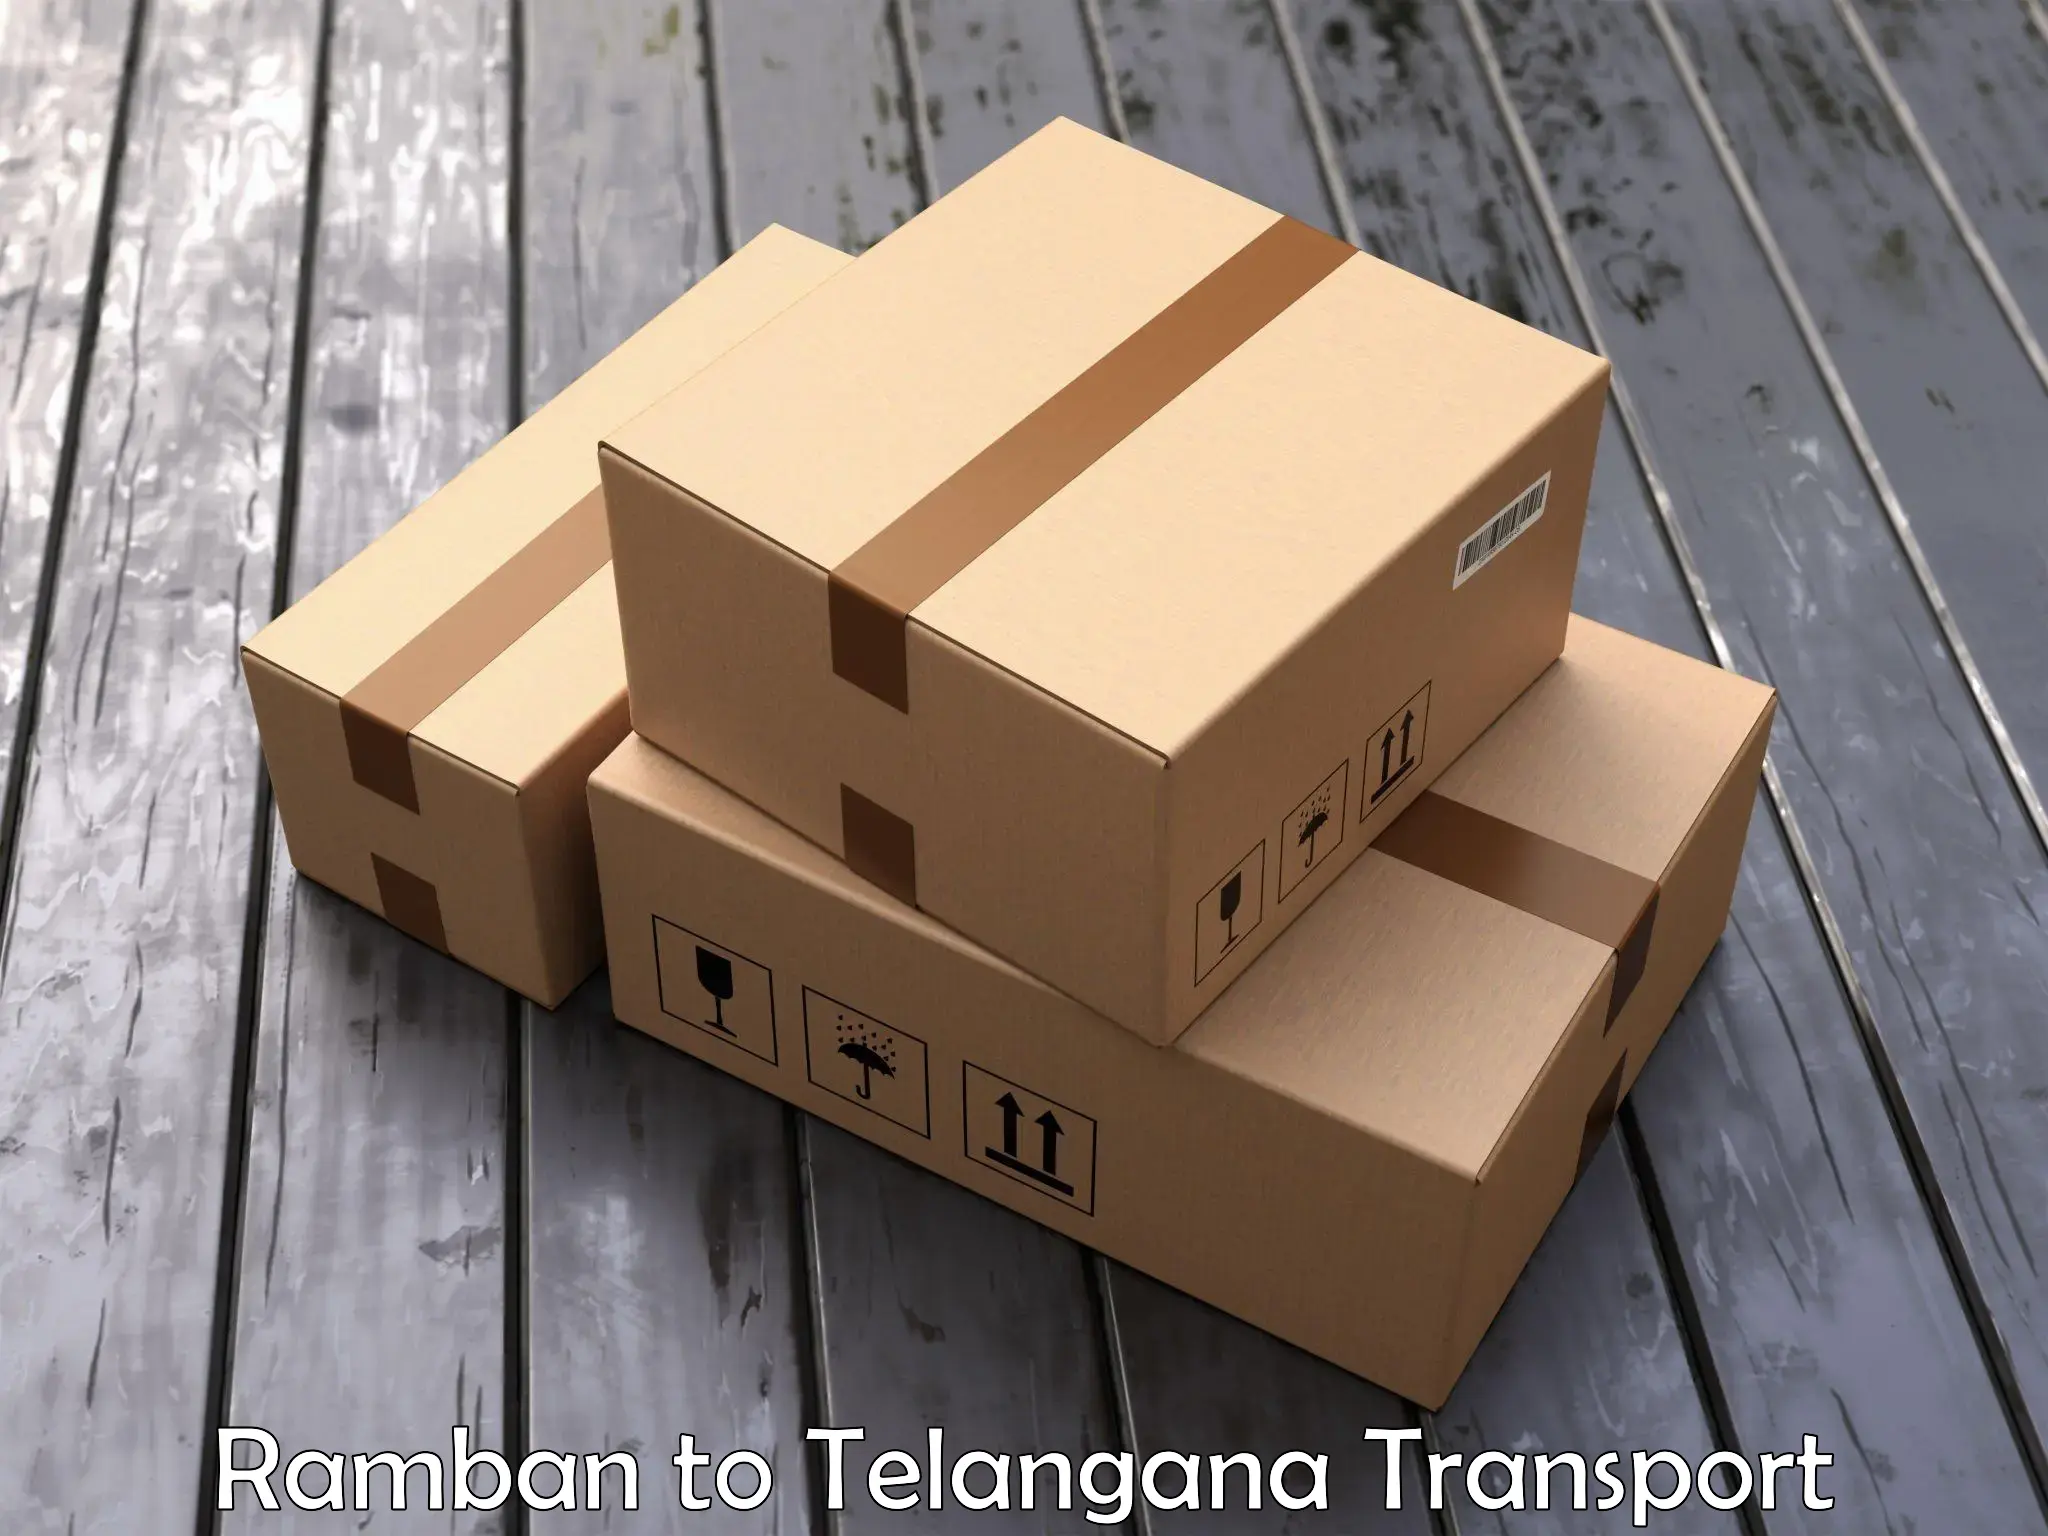 Vehicle transport services Ramban to Kaghaznagar